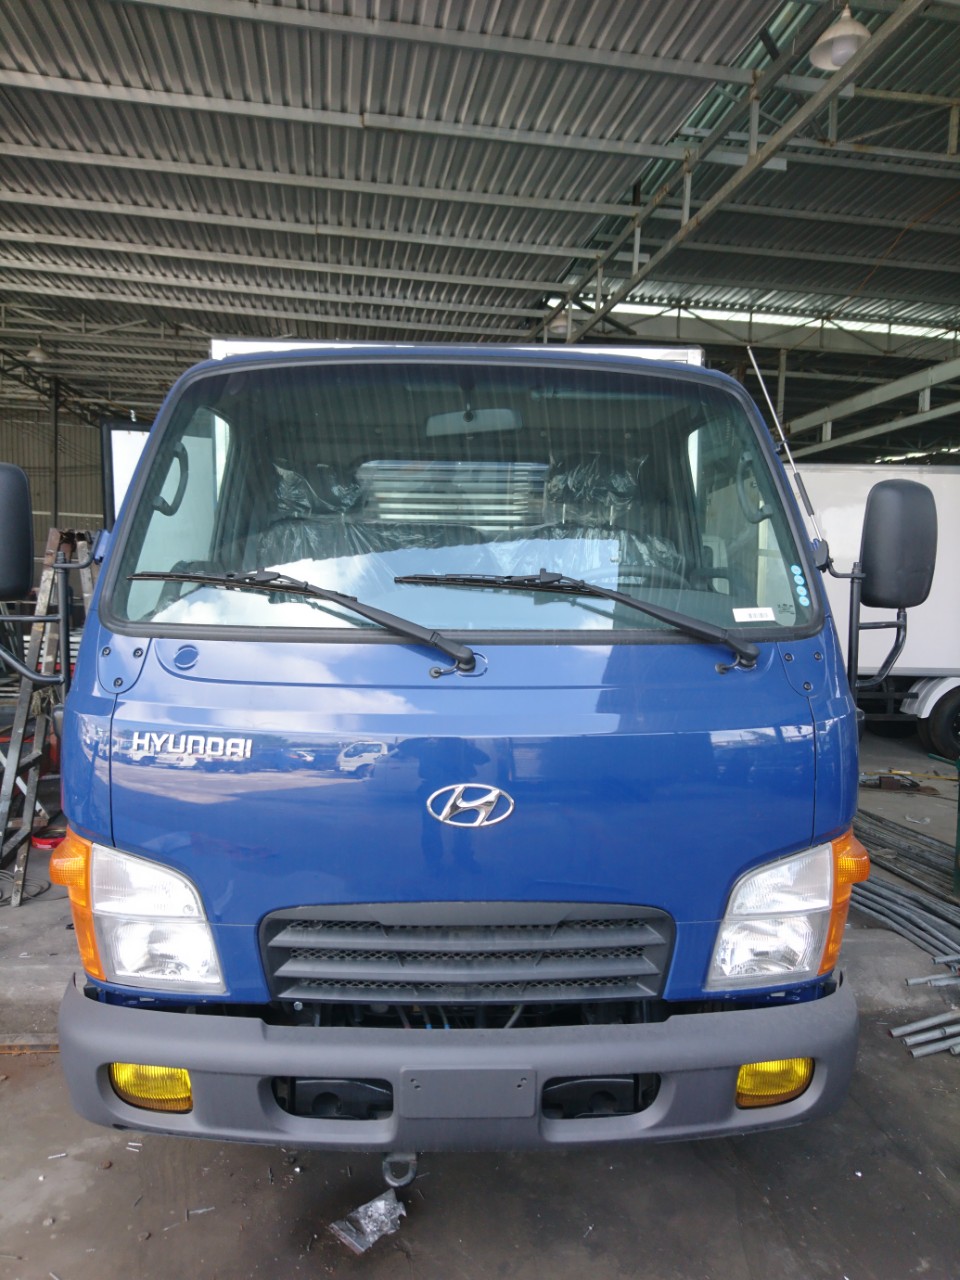 Cần bán Hyundai 2.5T thùng kín màu xanh vào Đô thị-0